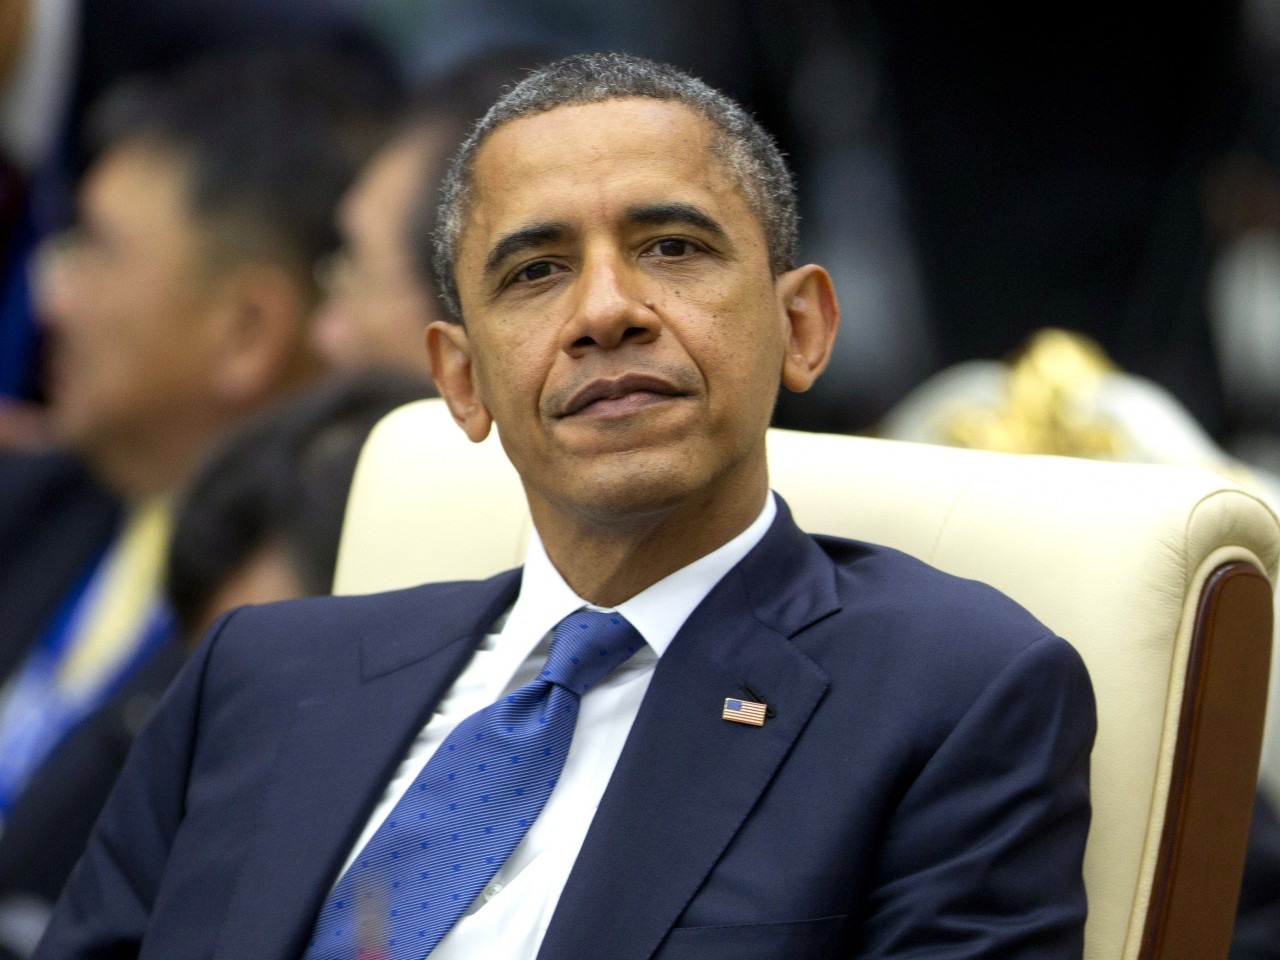  أوباما: حكومتنا لن تتعامل مع الإخوان كإرهابيين والحكومة المصرية تشن حملة واسعة عليهم